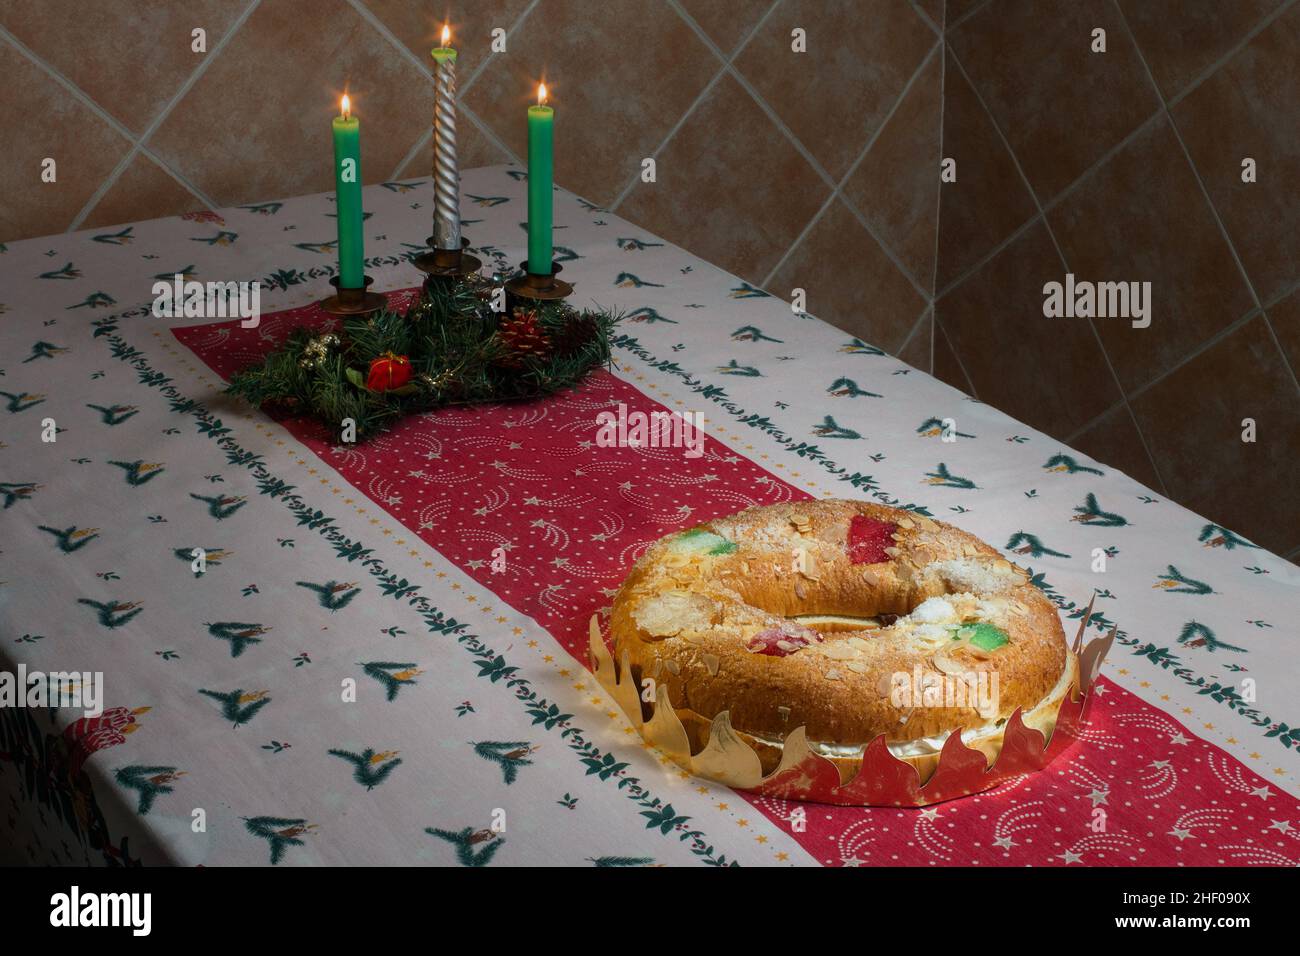 Ein riesiger Donut-Kuchen, gefüllt mit süßer Schlagsahne und Schokoladentrüffel mit kandierten Früchten, Mandeln und Puderzucker auf einer weihnachtlichen Tischdecke mit l Stockfoto